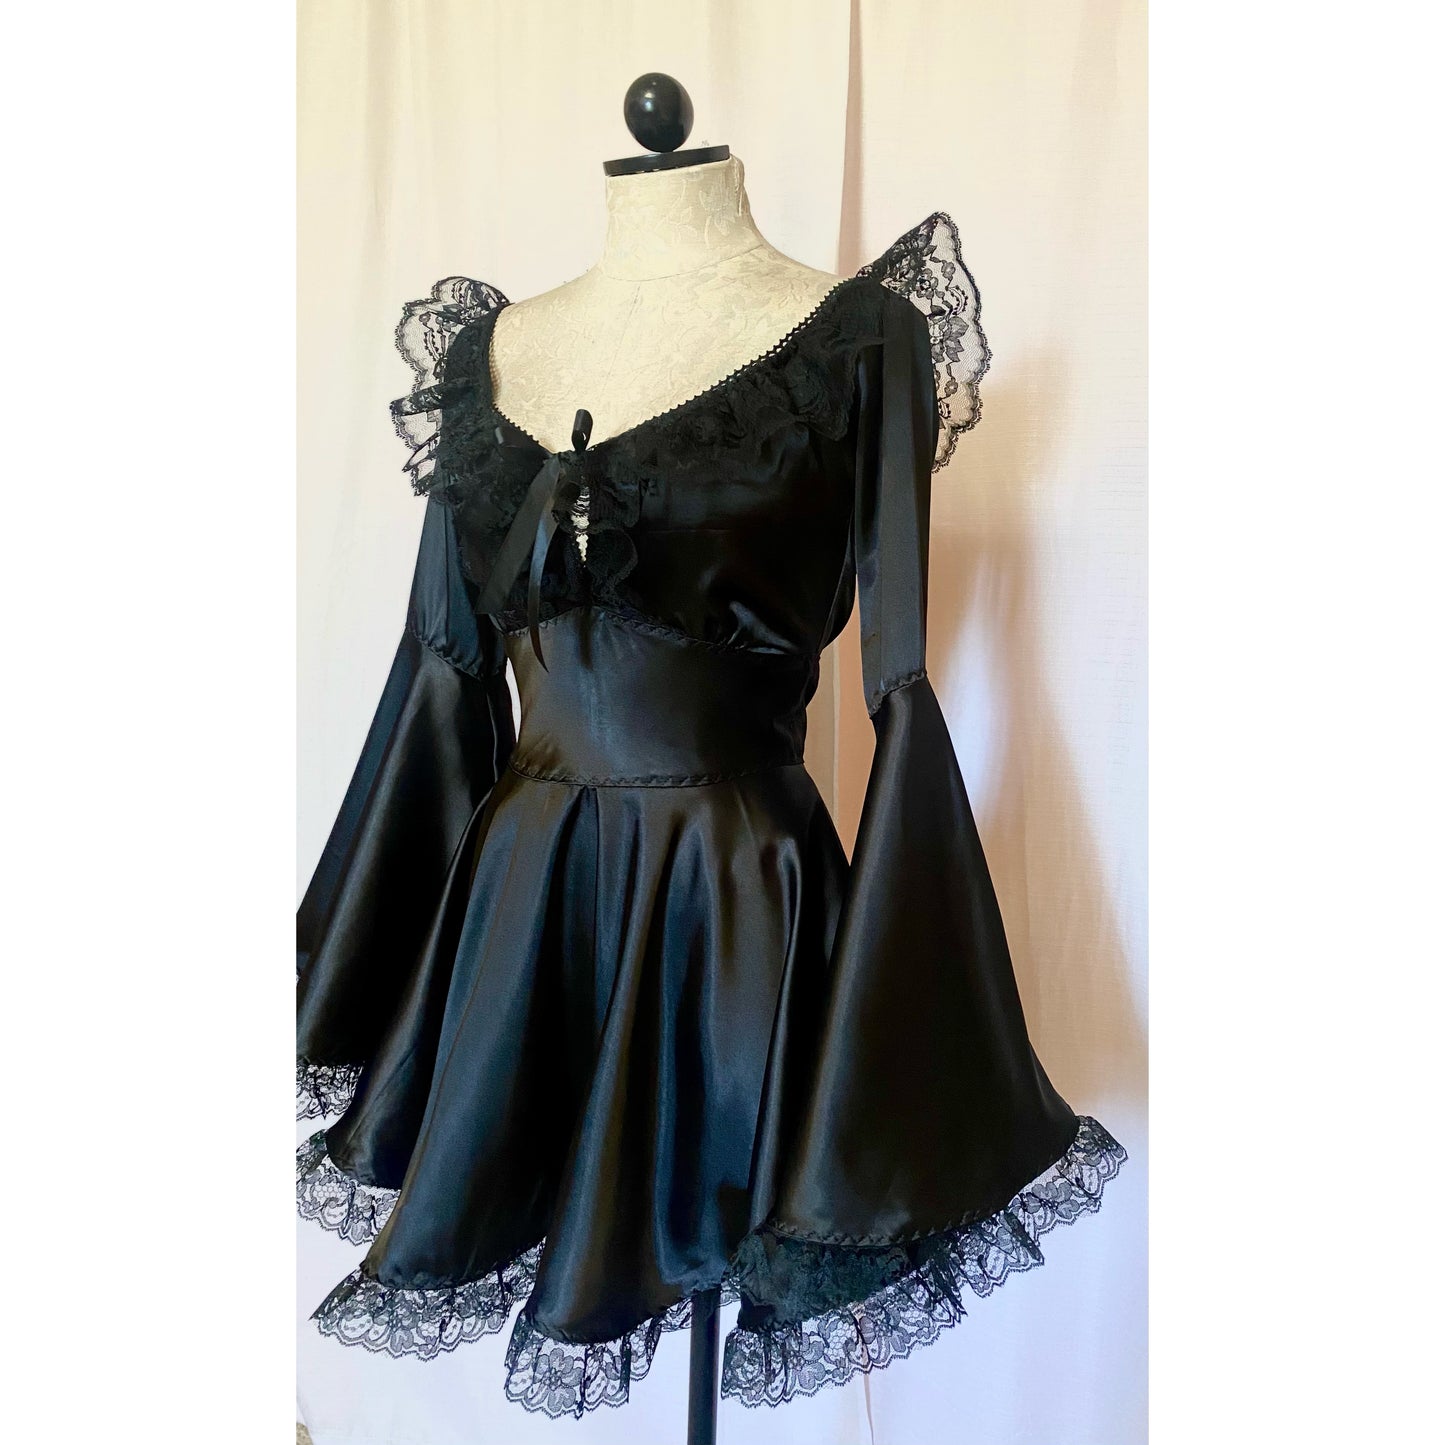 The Deidre Dress in Black